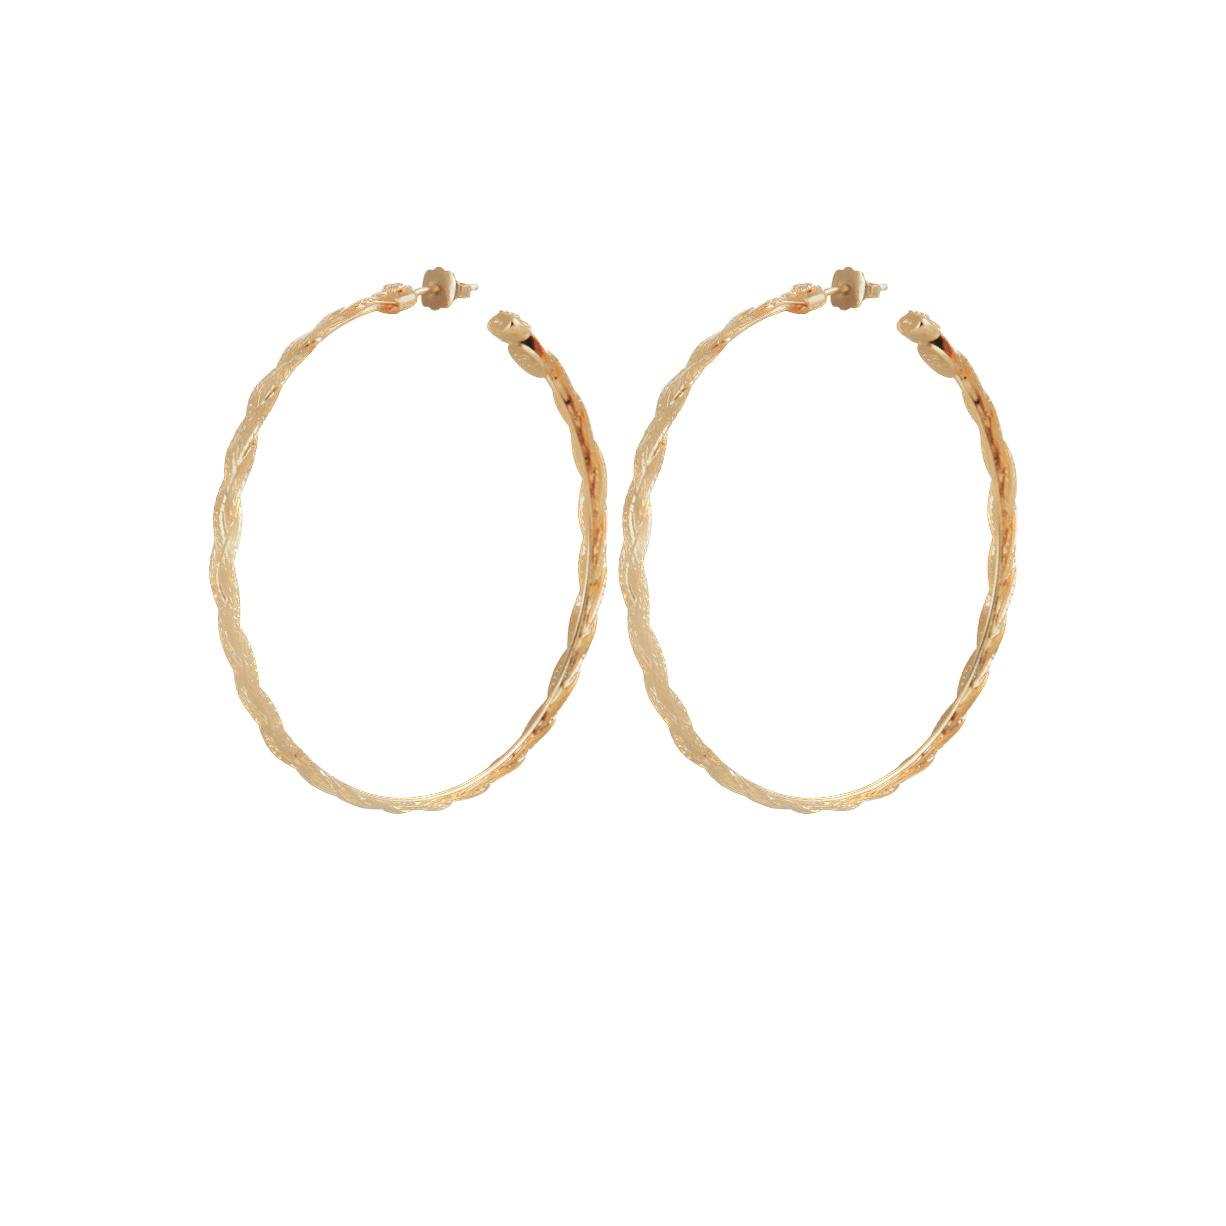 Gas Earrings Yellow Gold / Small Gas Tresse Hoop Earrings